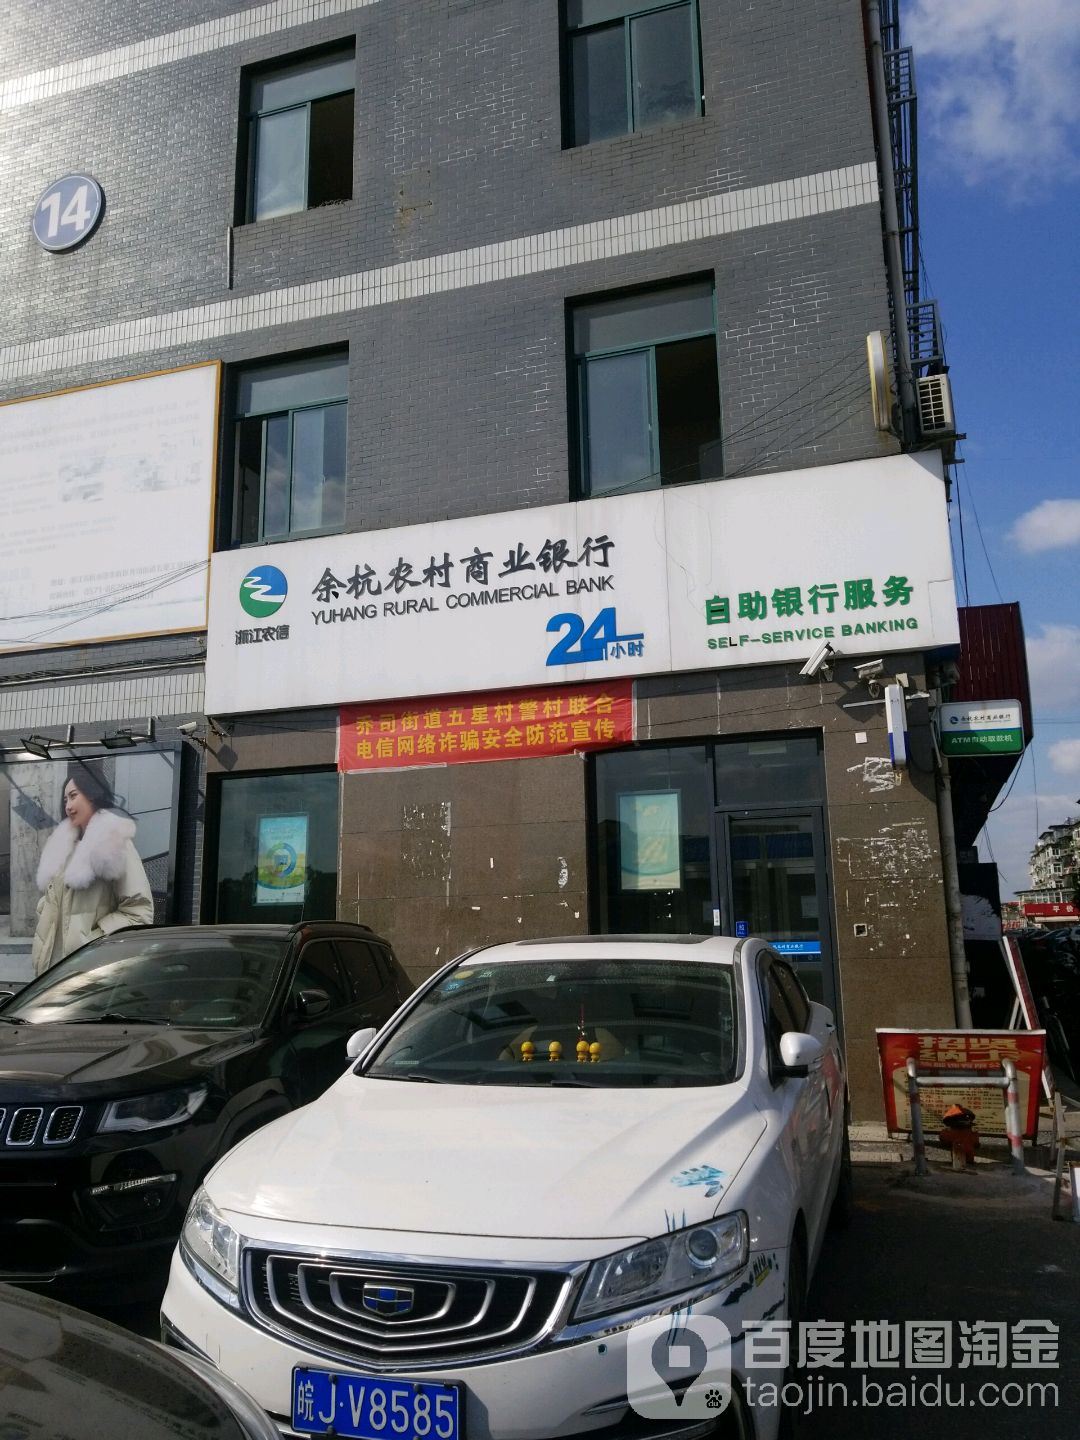 余杭农村商业银行24h自助银行服务(五园路店)